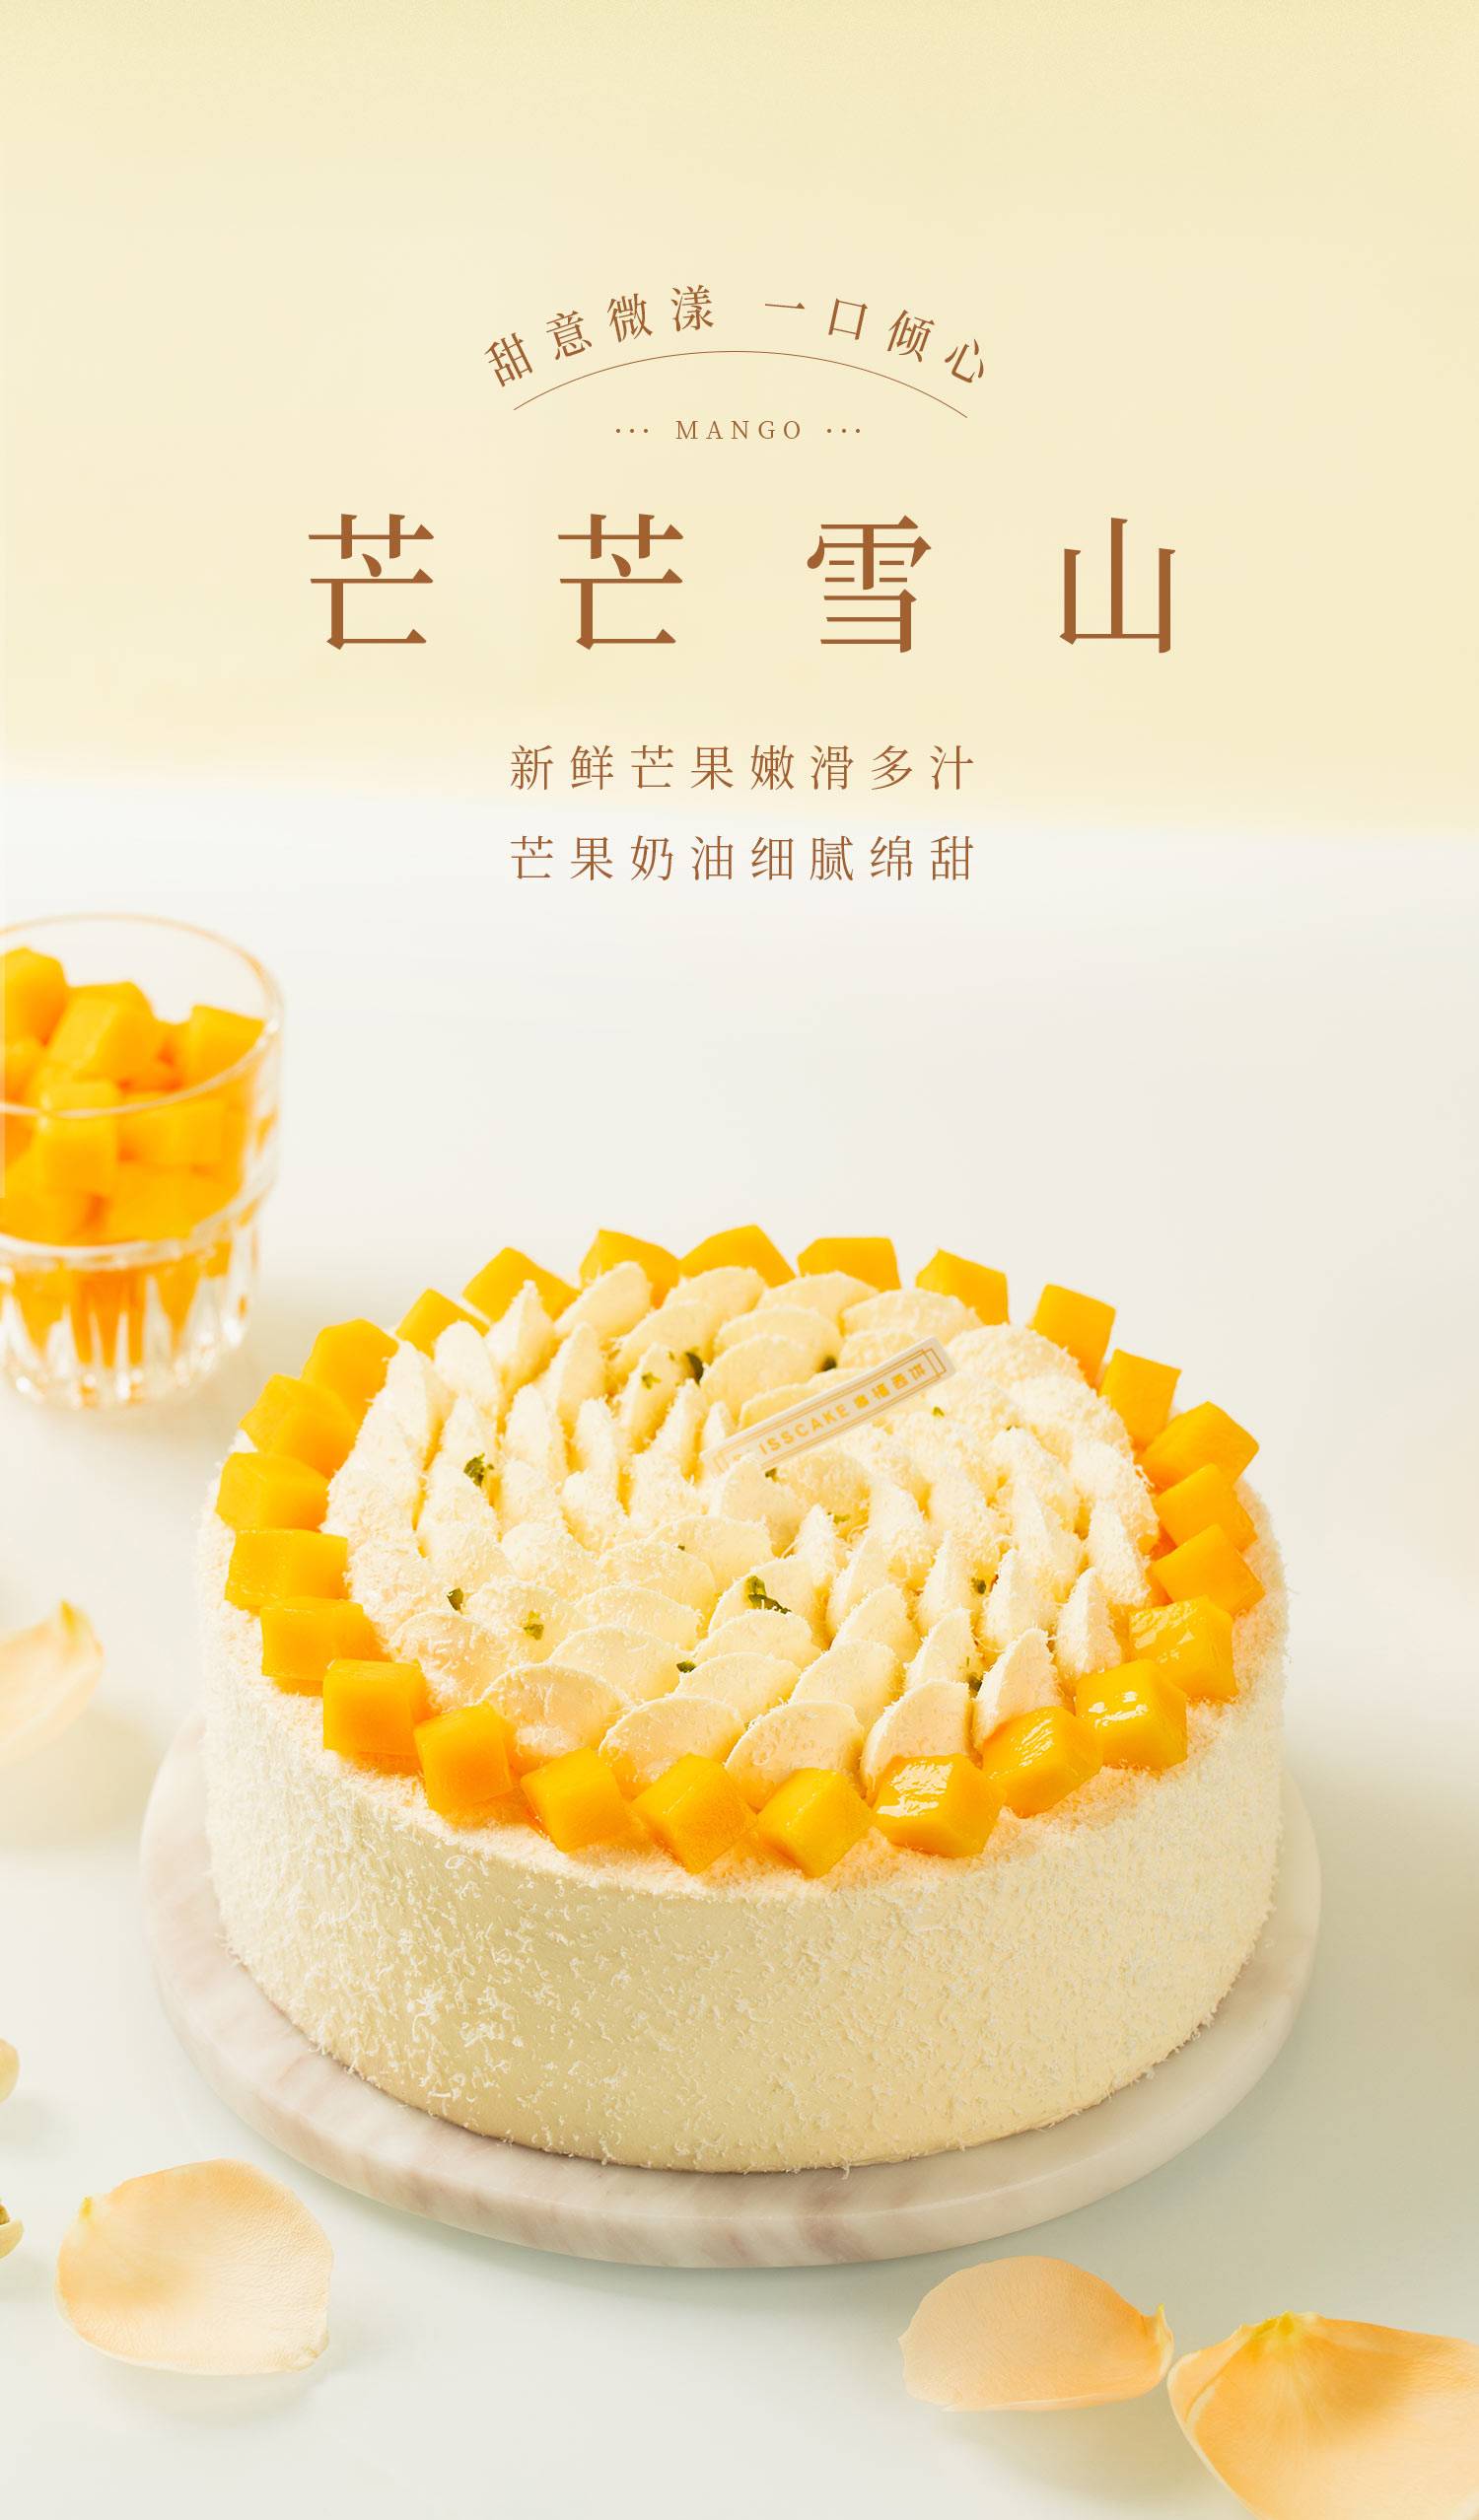 2磅芒芒寻莓_幸福西饼蛋糕预定_加盟幸福西饼_深圳幸福西饼官方网站